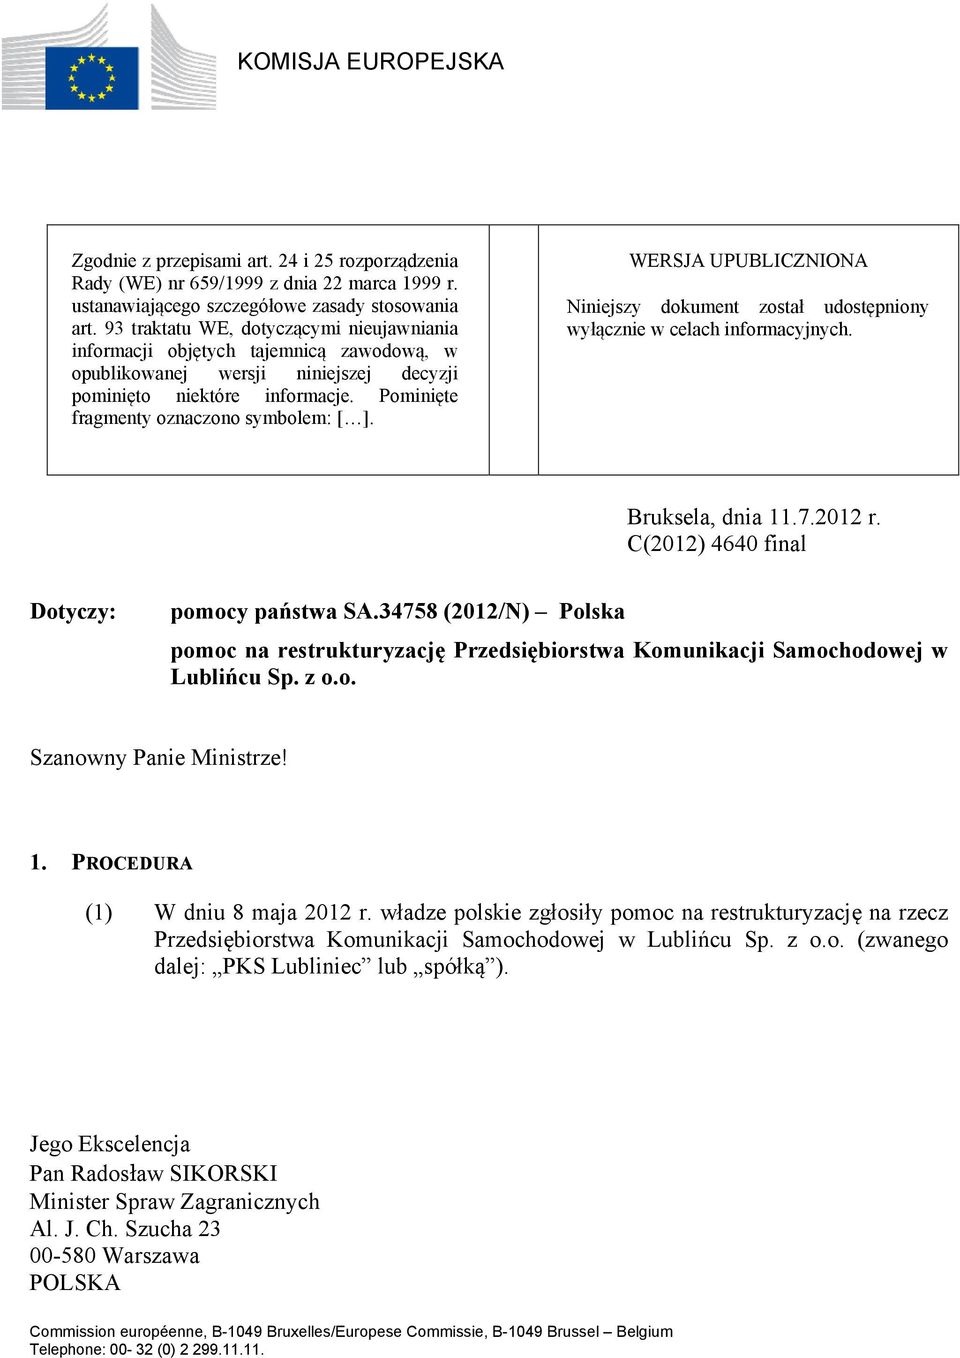 WERSJA UPUBLICZNIONA Niniejszy dokument został udostępniony wyłącznie w celach informacyjnych. Bruksela, dnia 11.7.2012 r. C(2012) 4640 final Dotyczy: pomocy państwa SA.